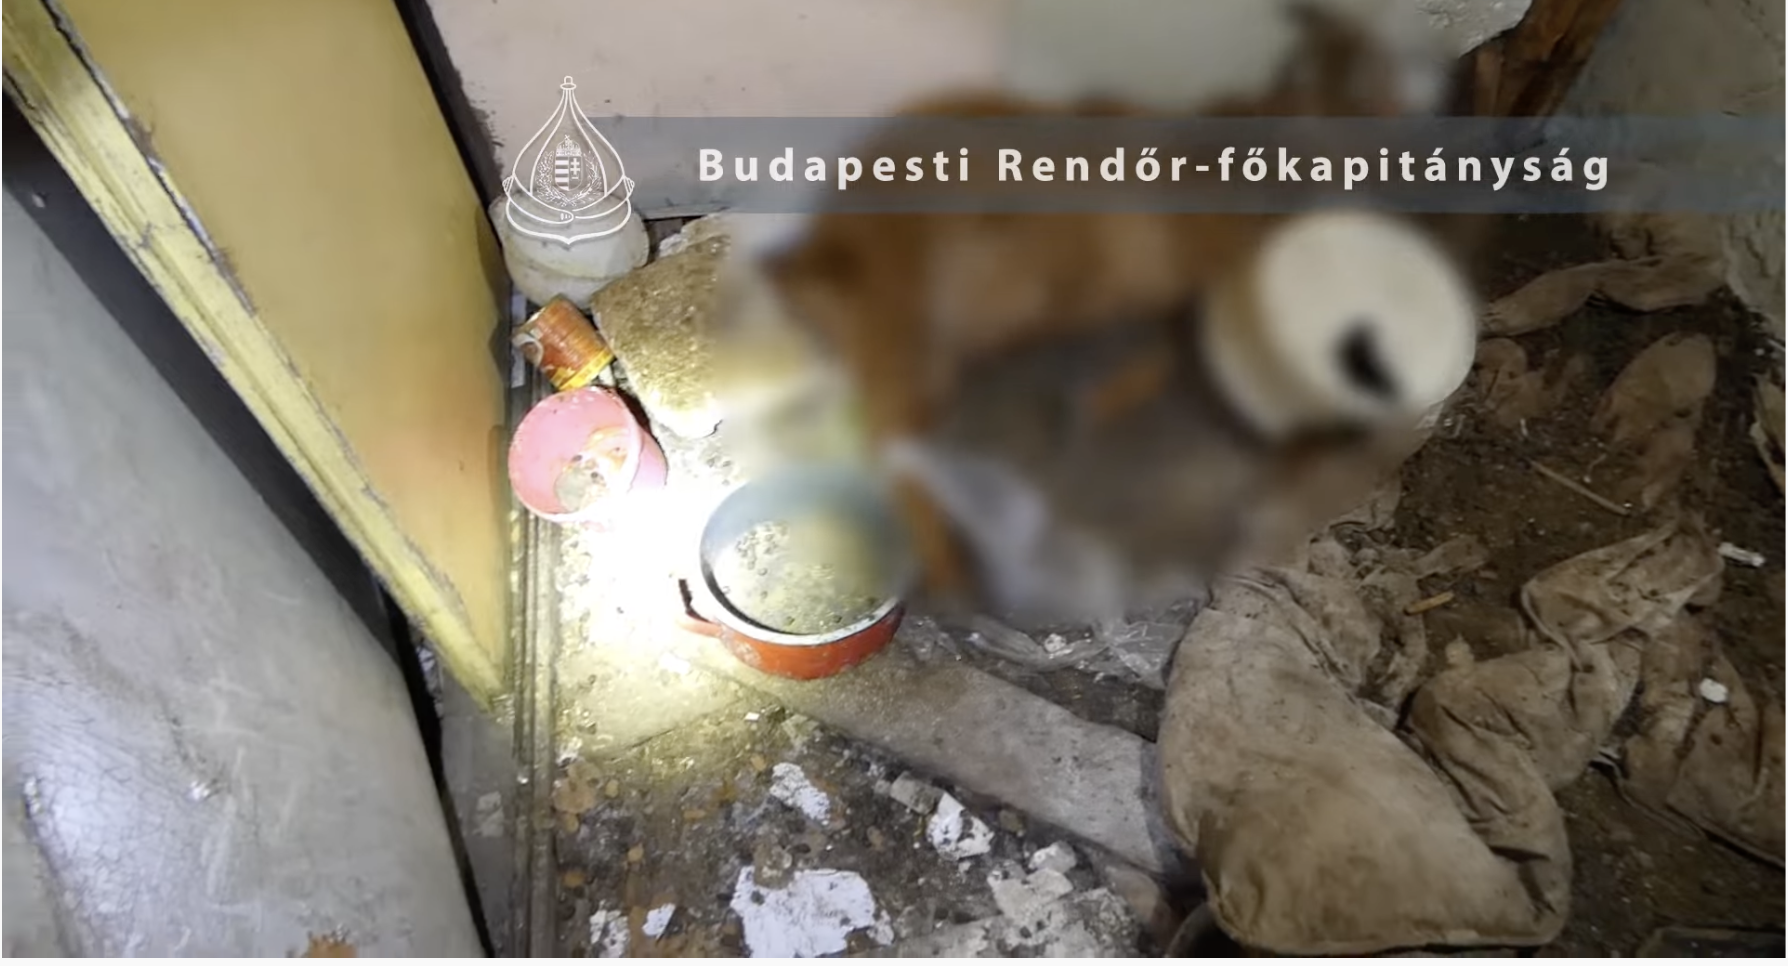 Videón a csepeli házaspár lakhelye, ahol több háziállatot hagytak elpusztulni